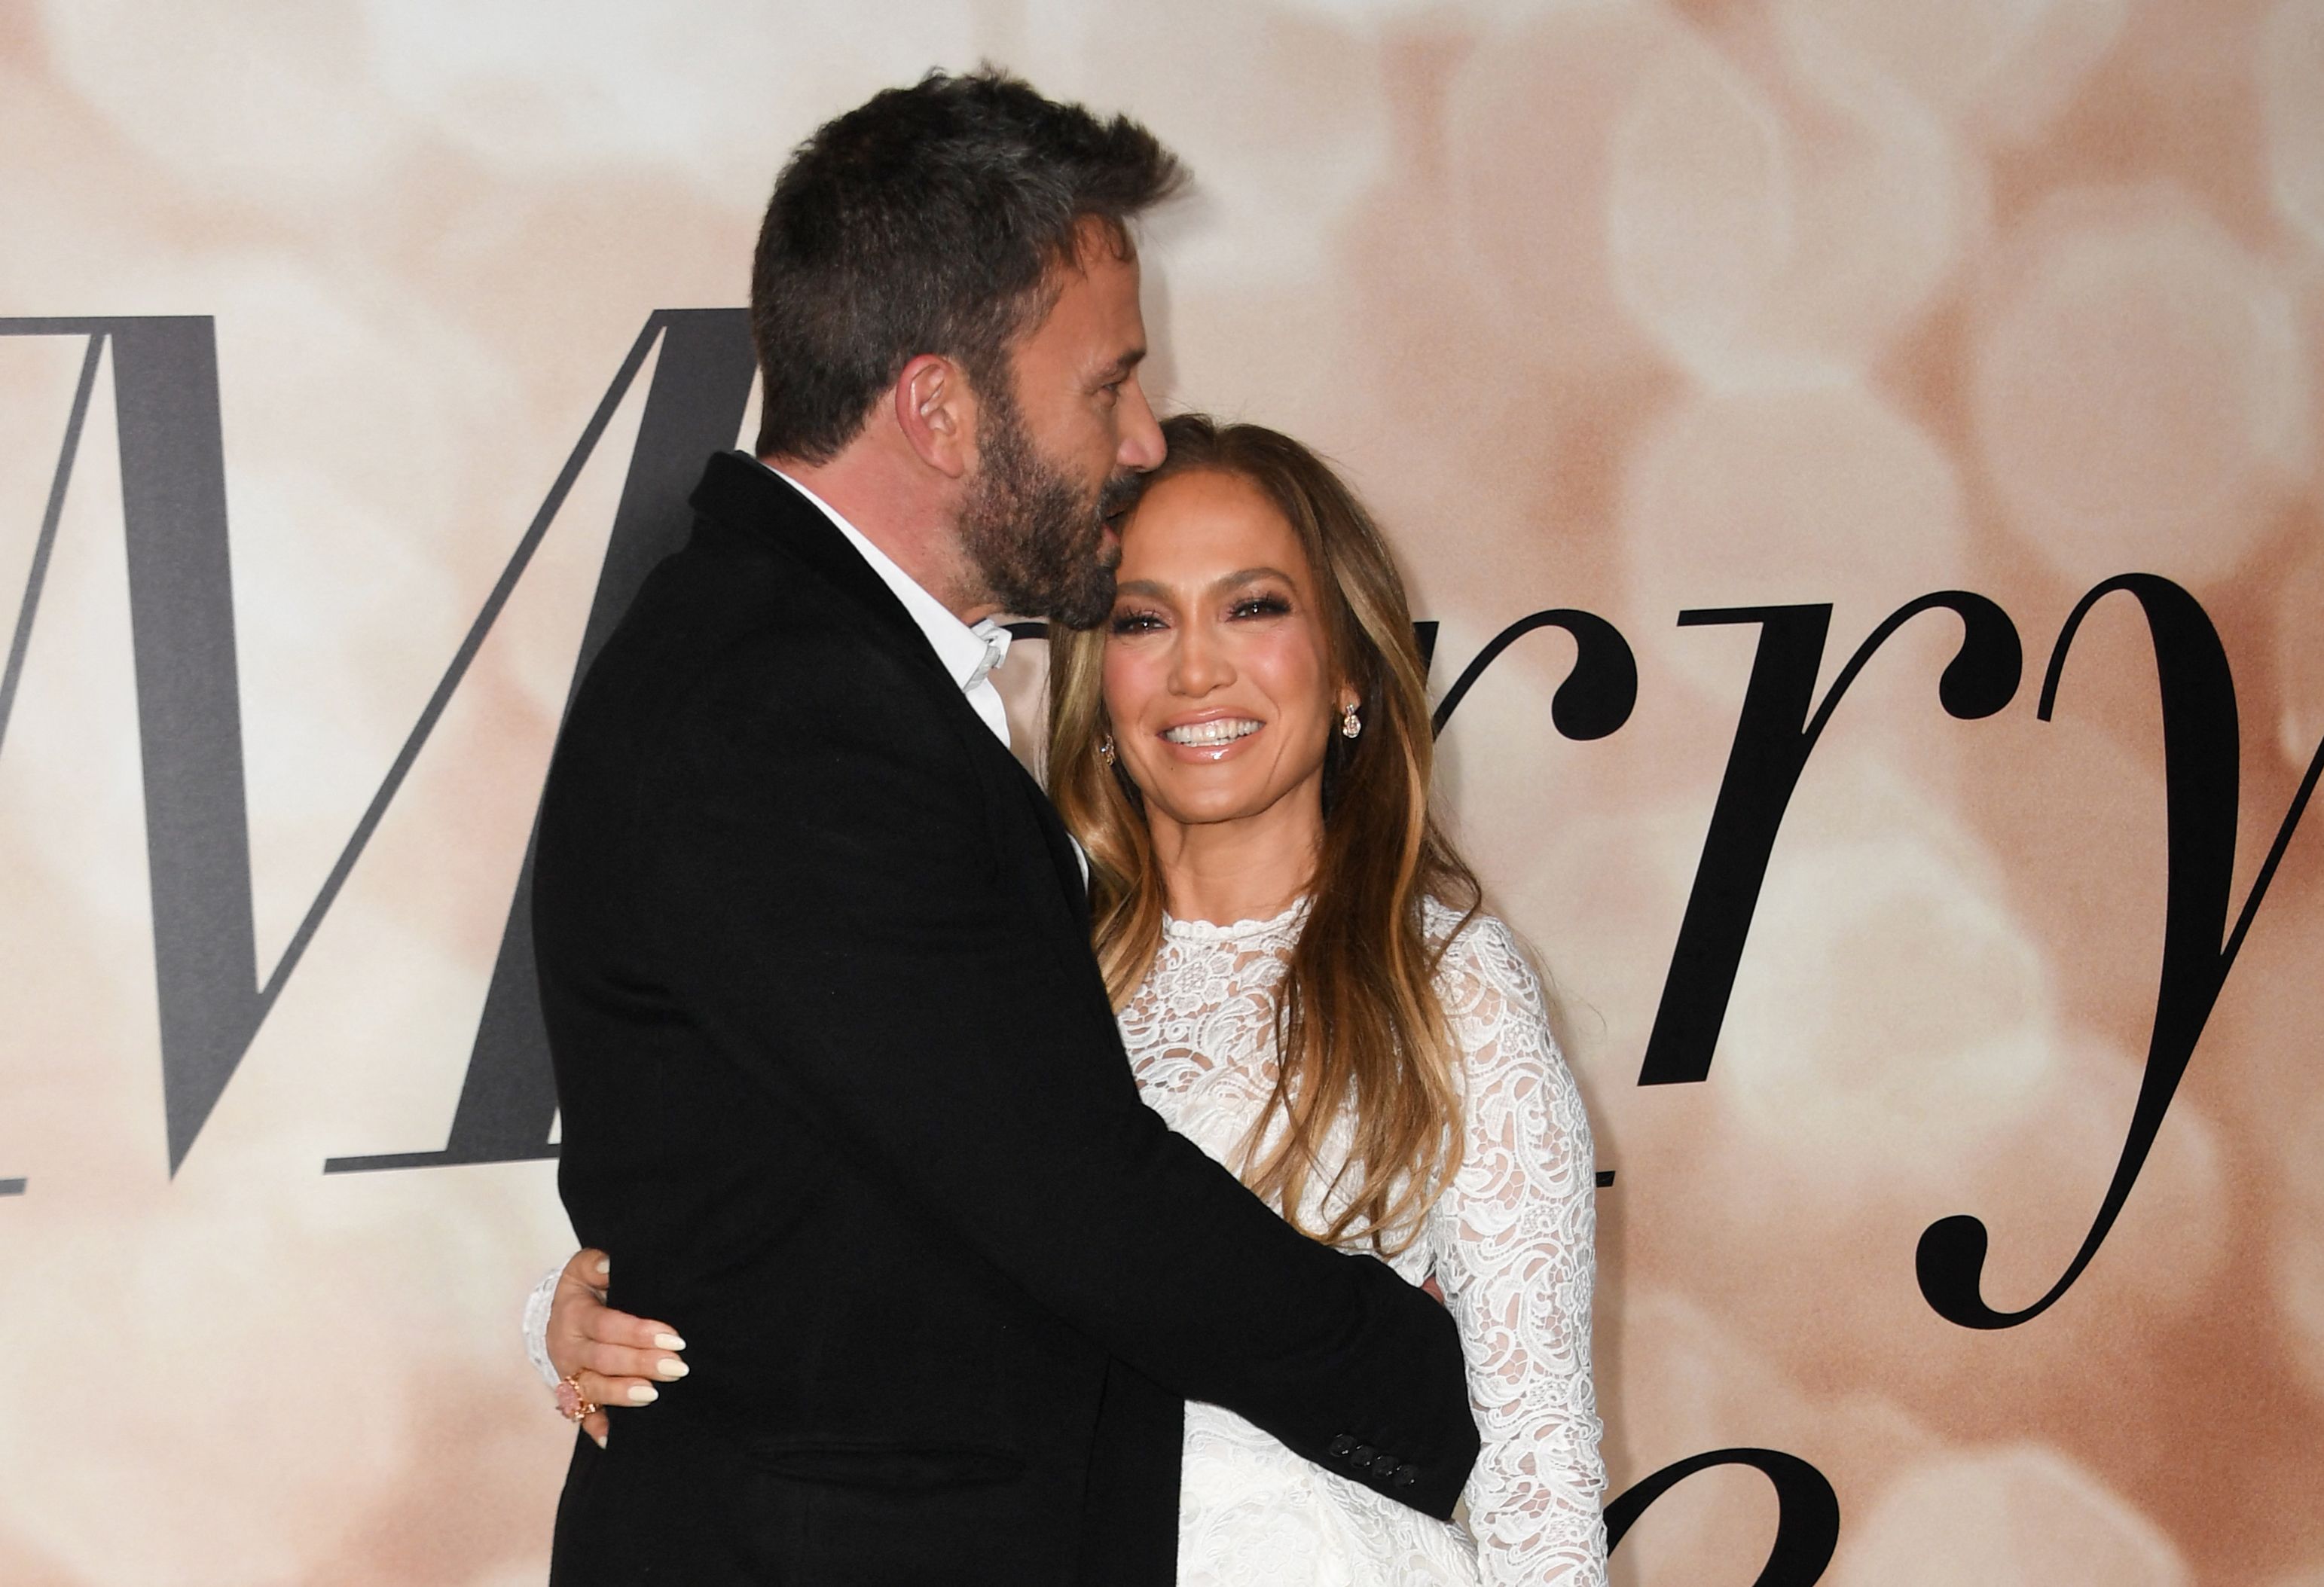 Ben Affleck y Jennifer López se comprometieron por segunda vez, según anunció la cantante. (Foto Prensa Libre: VALERIE MACON / AFP).